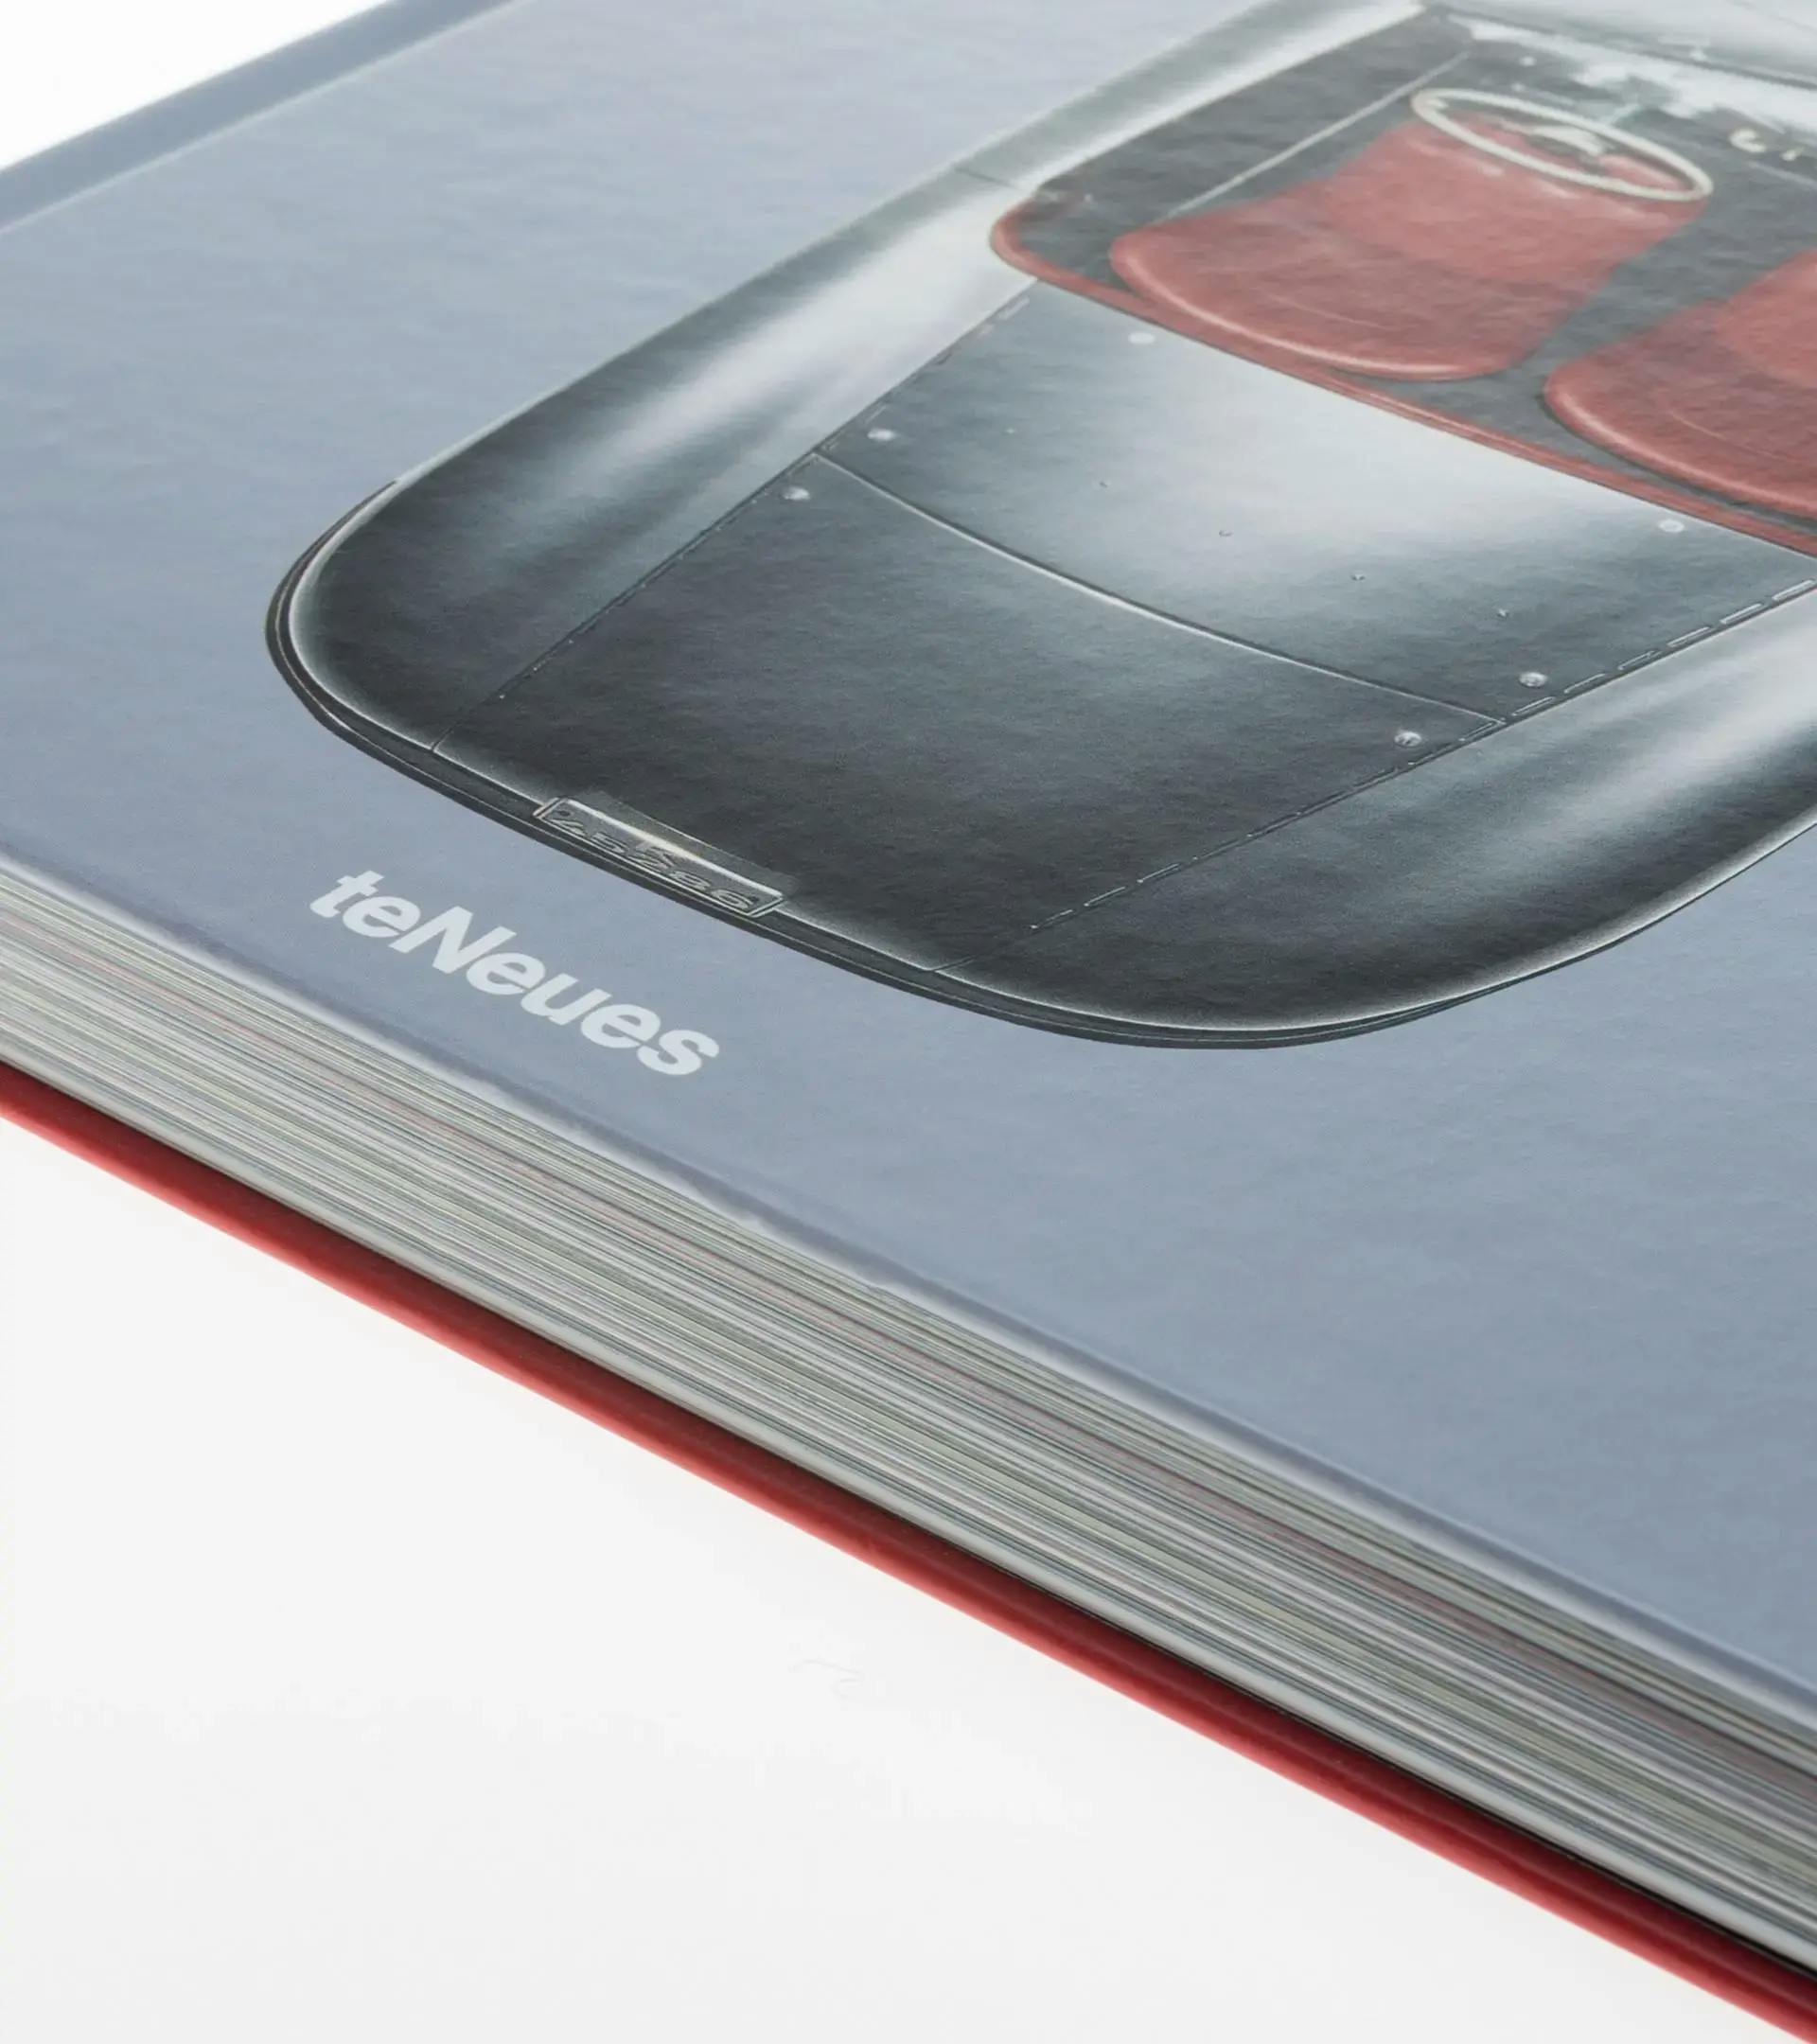 The Porsche Book - Les meilleures images de Porsche par Frank M. Orel 3